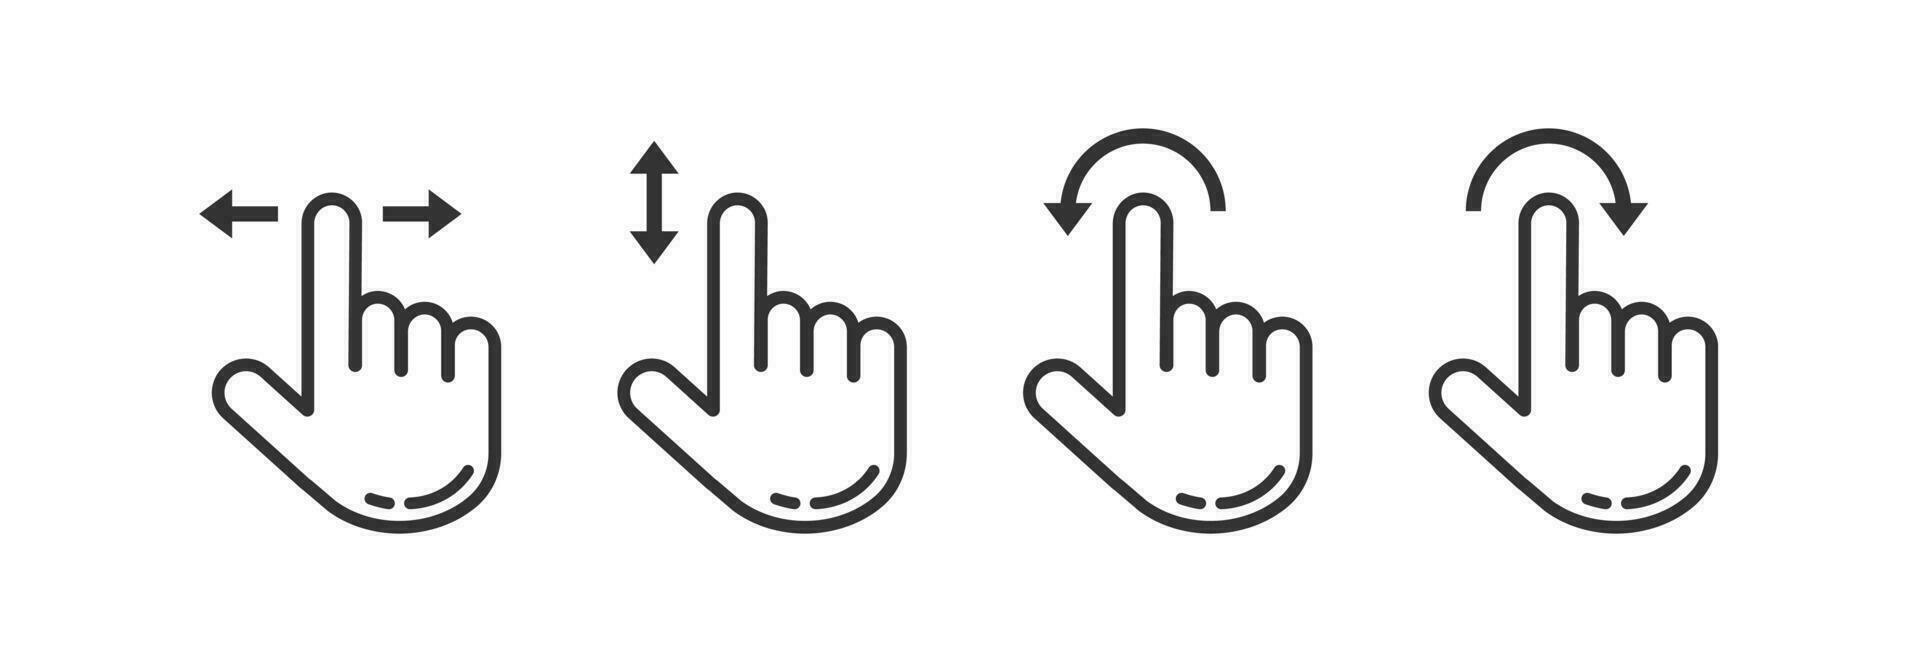 Hand Zeiger Mauszeiger Maus Symbol Satz. Index Finger Bewegung Illustration Symbol. Zeichen Hand und Pfeil Vektor